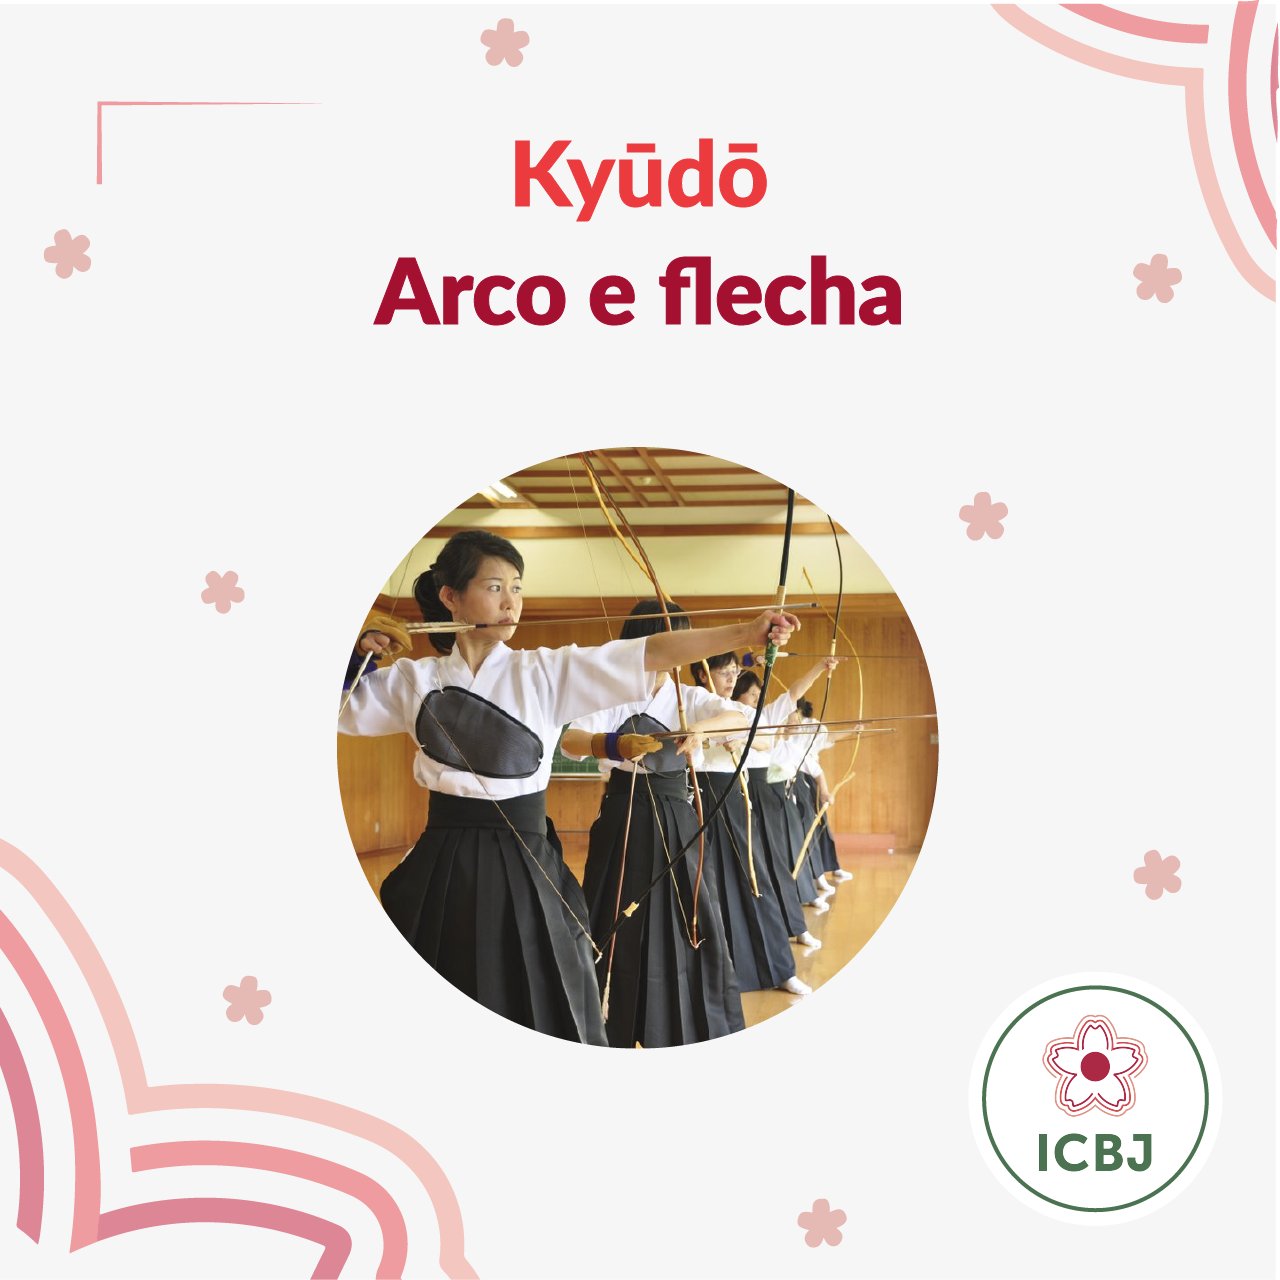 ICBJ – Instituto Cultural Brasil Japão